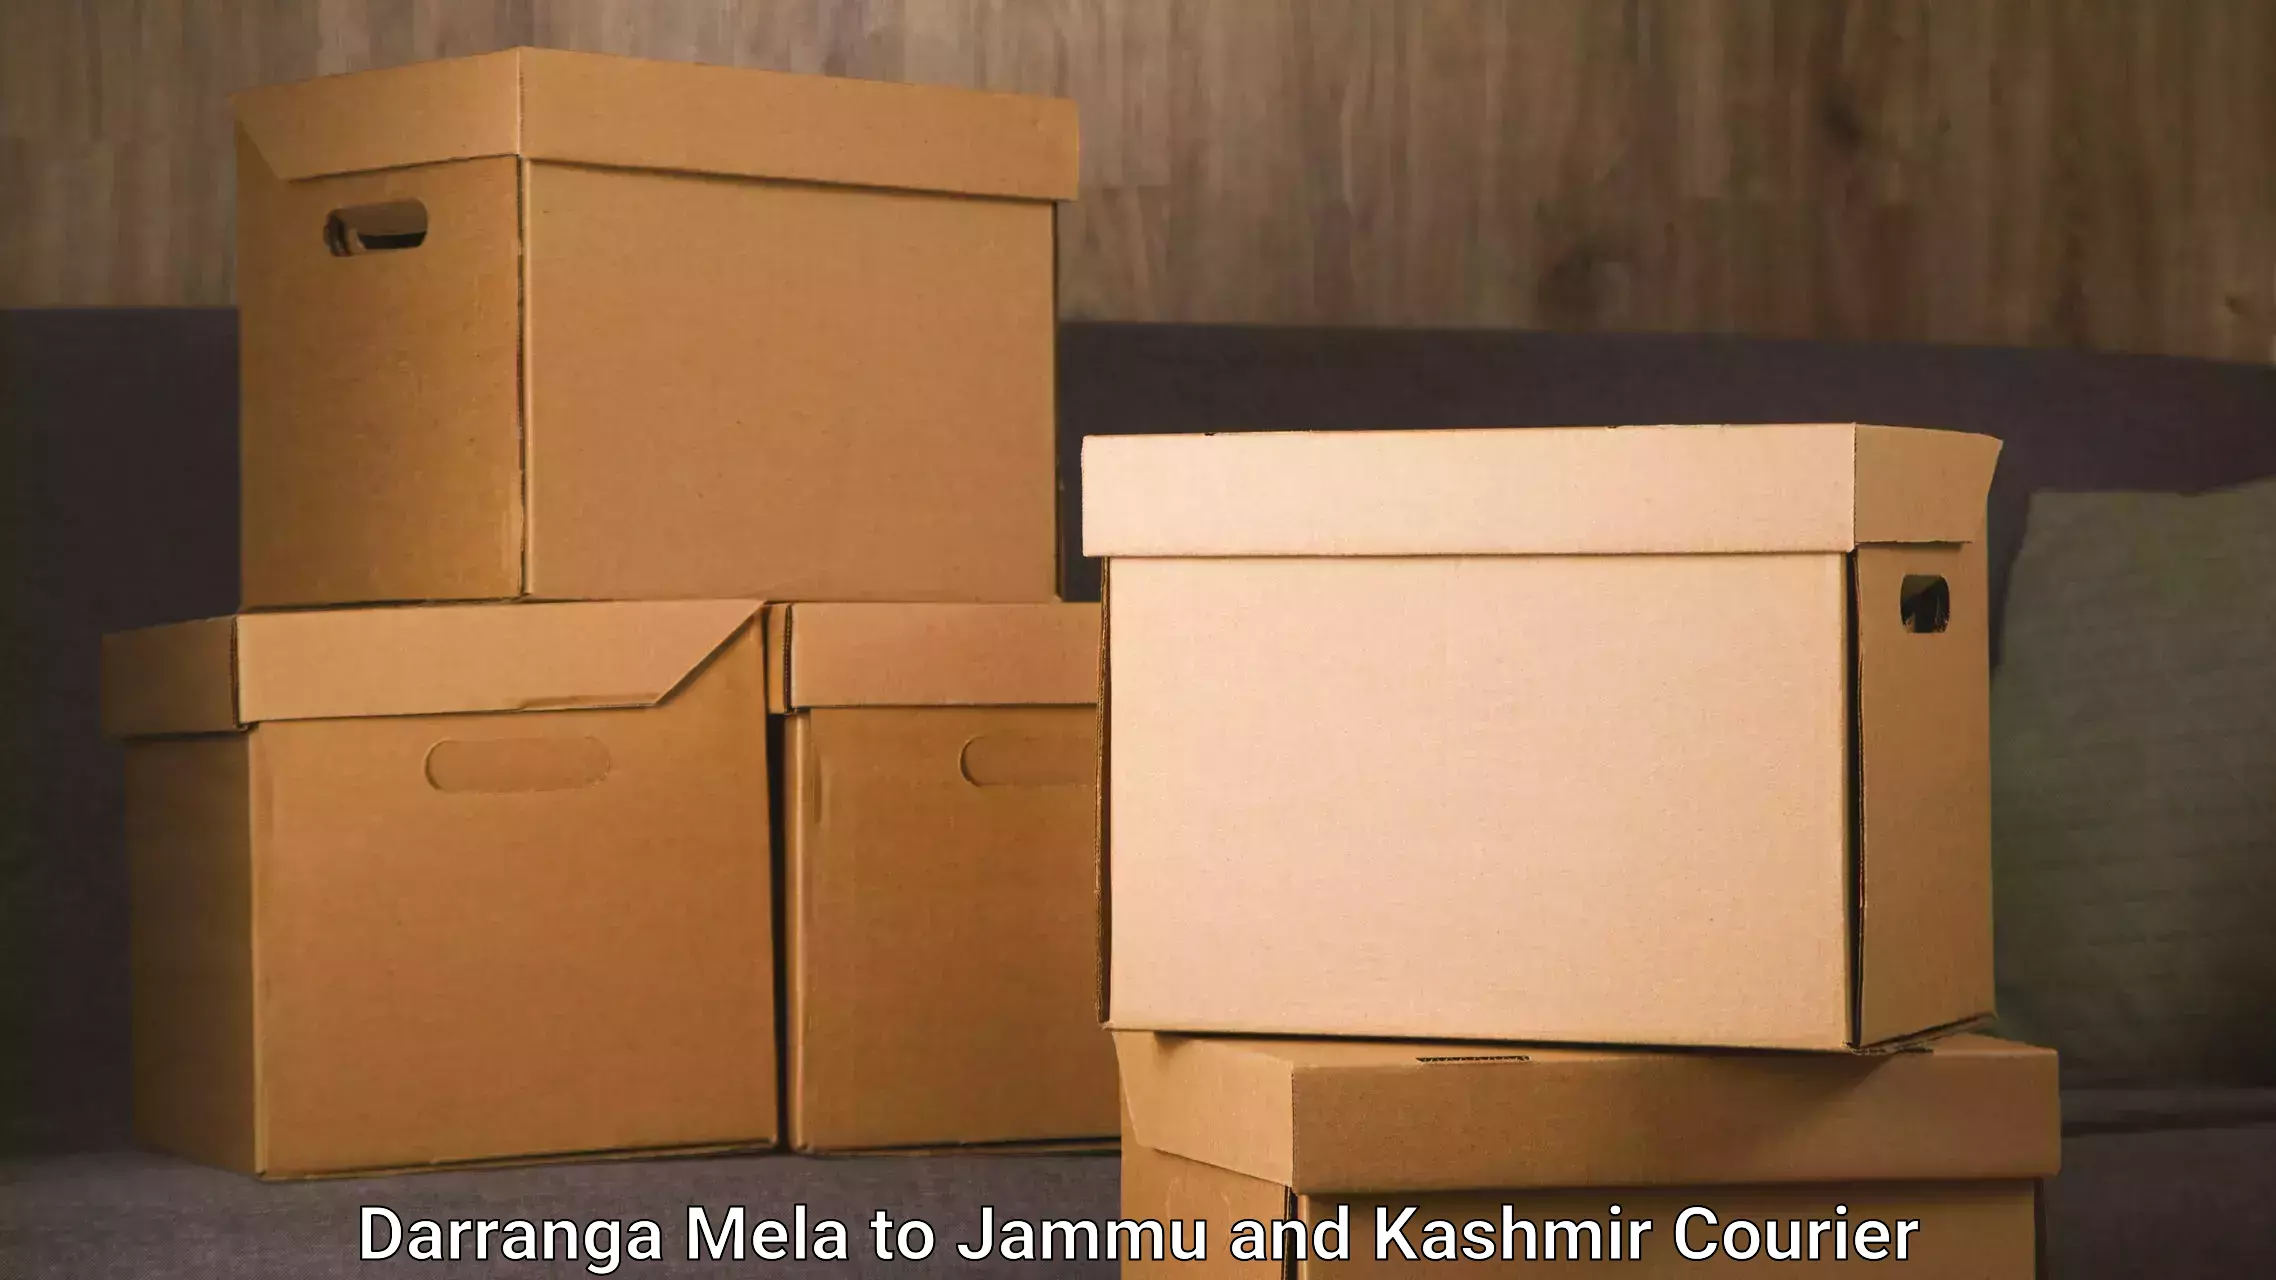 Same-day delivery solutions Darranga Mela to Anantnag